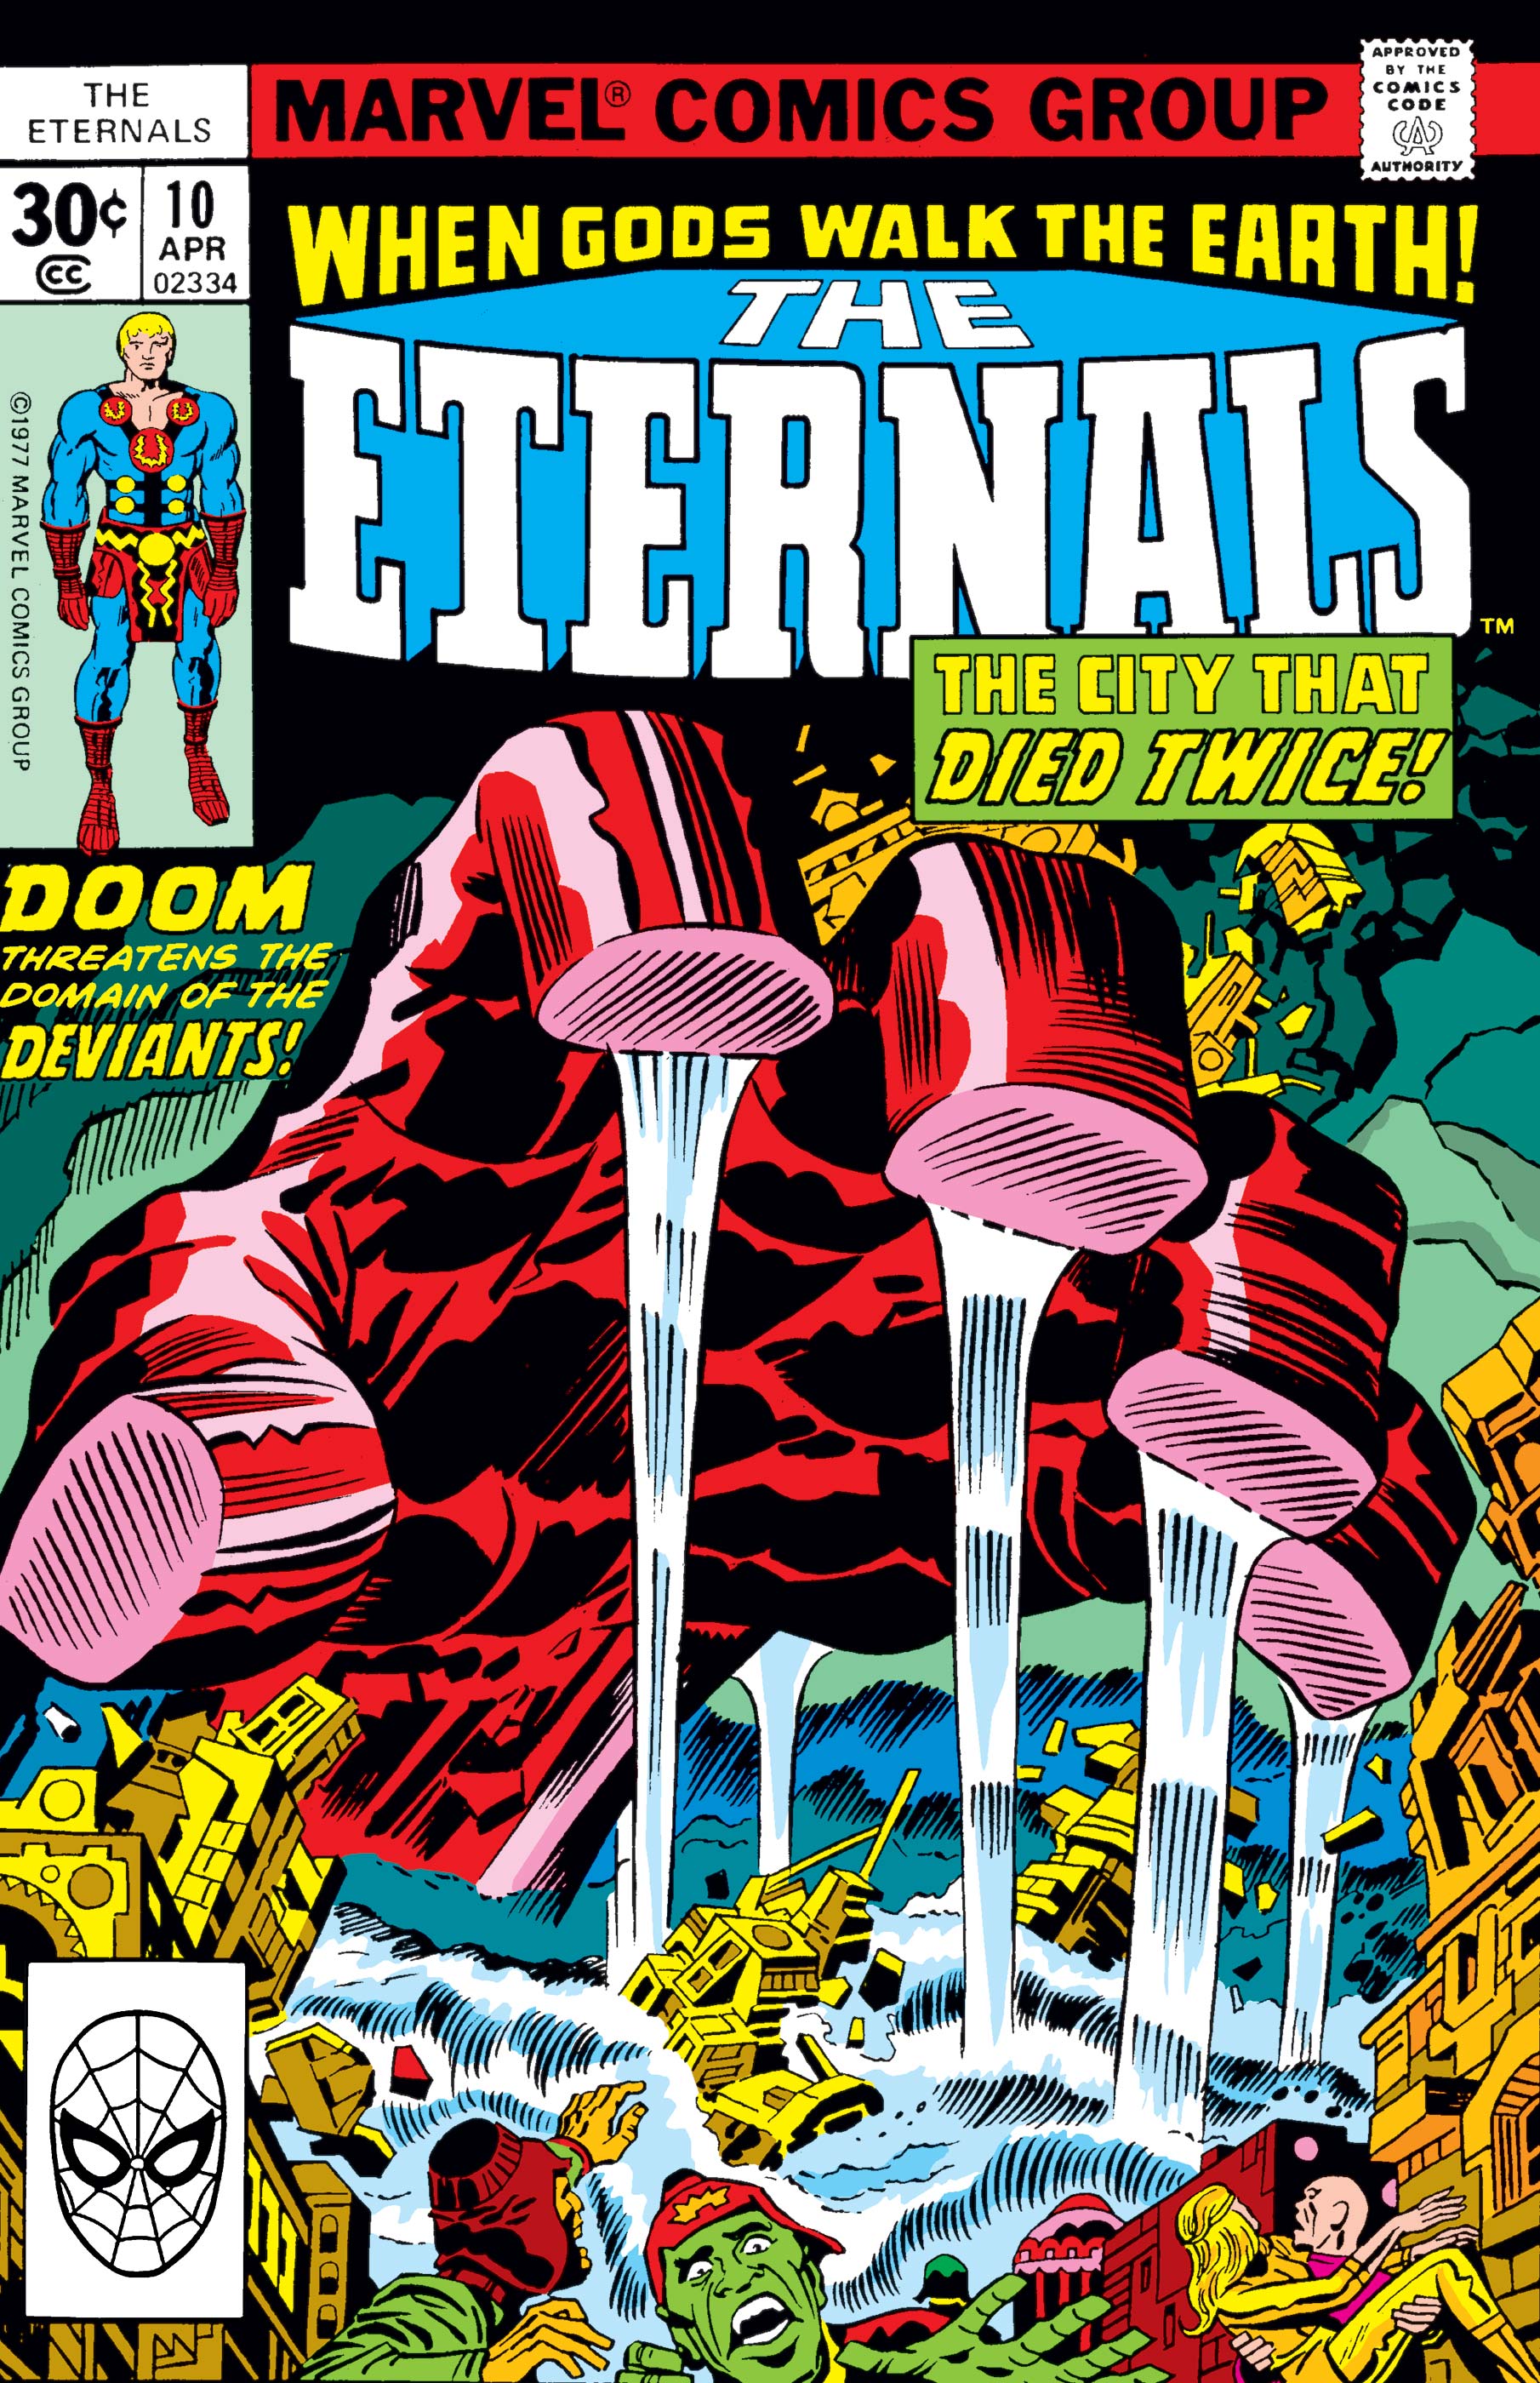 Eternals (1976) #10